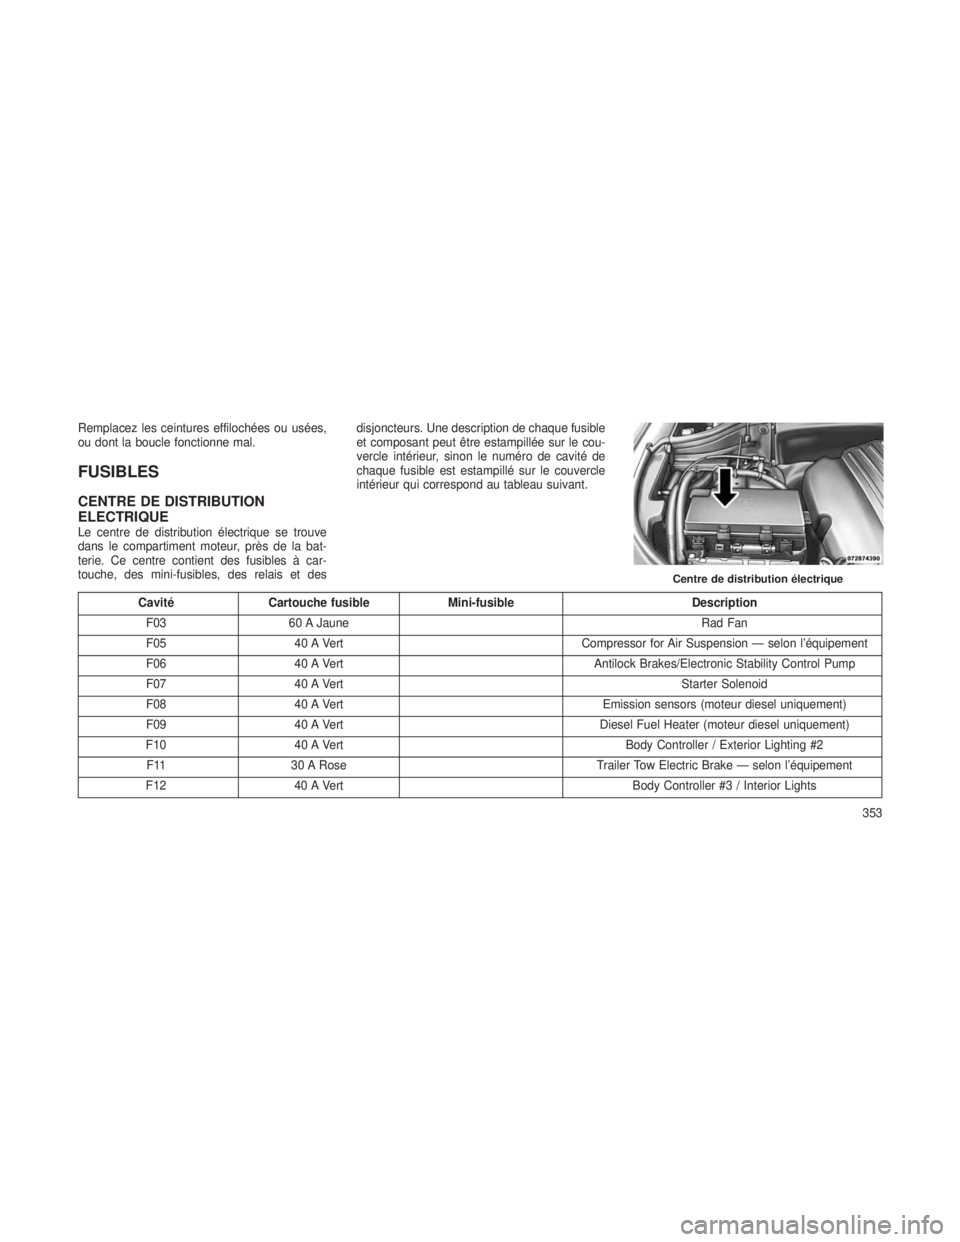 JEEP GRAND CHEROKEE 2014  Notice dentretien (in French) Remplacez les ceintures effilochées ou usées,
ou dont la boucle fonctionne mal.
FUSIBLES
CENTRE DE DISTRIBUTION
ELECTRIQUE
Le centre de distribution électrique se trouve
dans le compartiment moteur